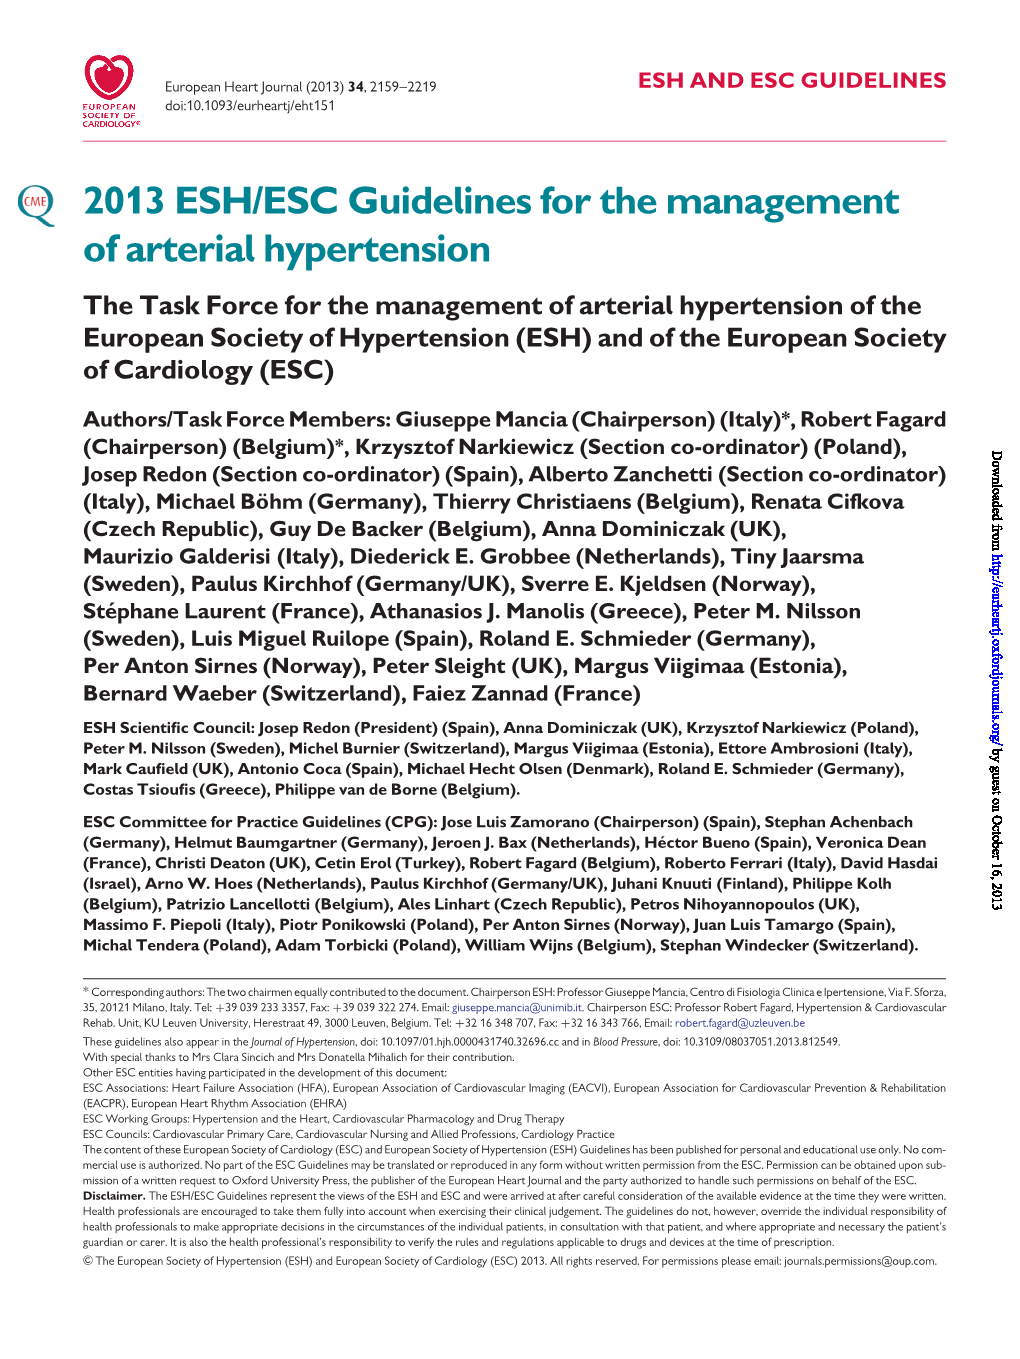 2013 ESH/ESC Guidelines for the Management of Arterial Hypertension